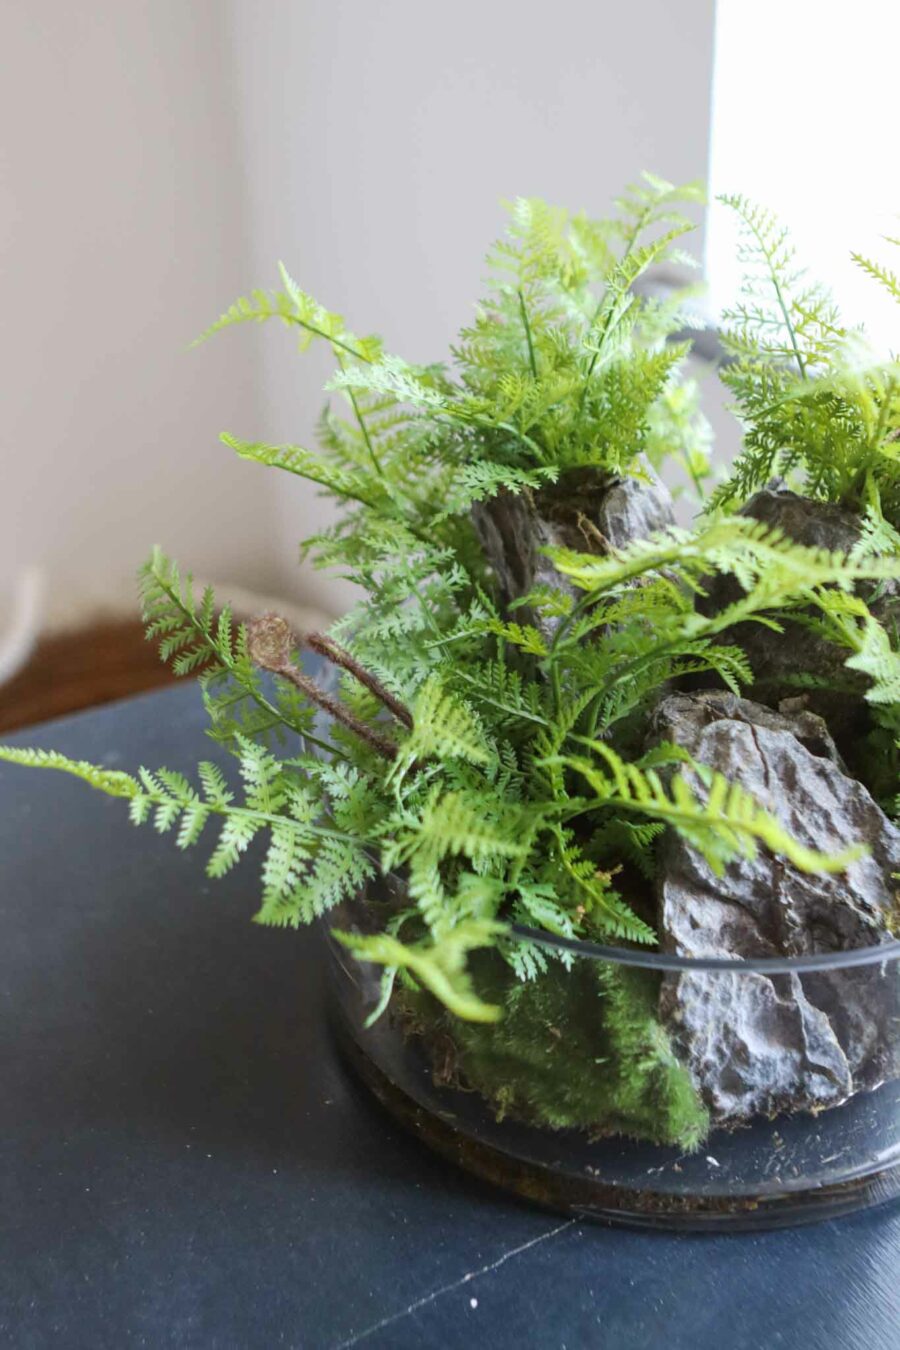 wolferton fern plant in glass bowl